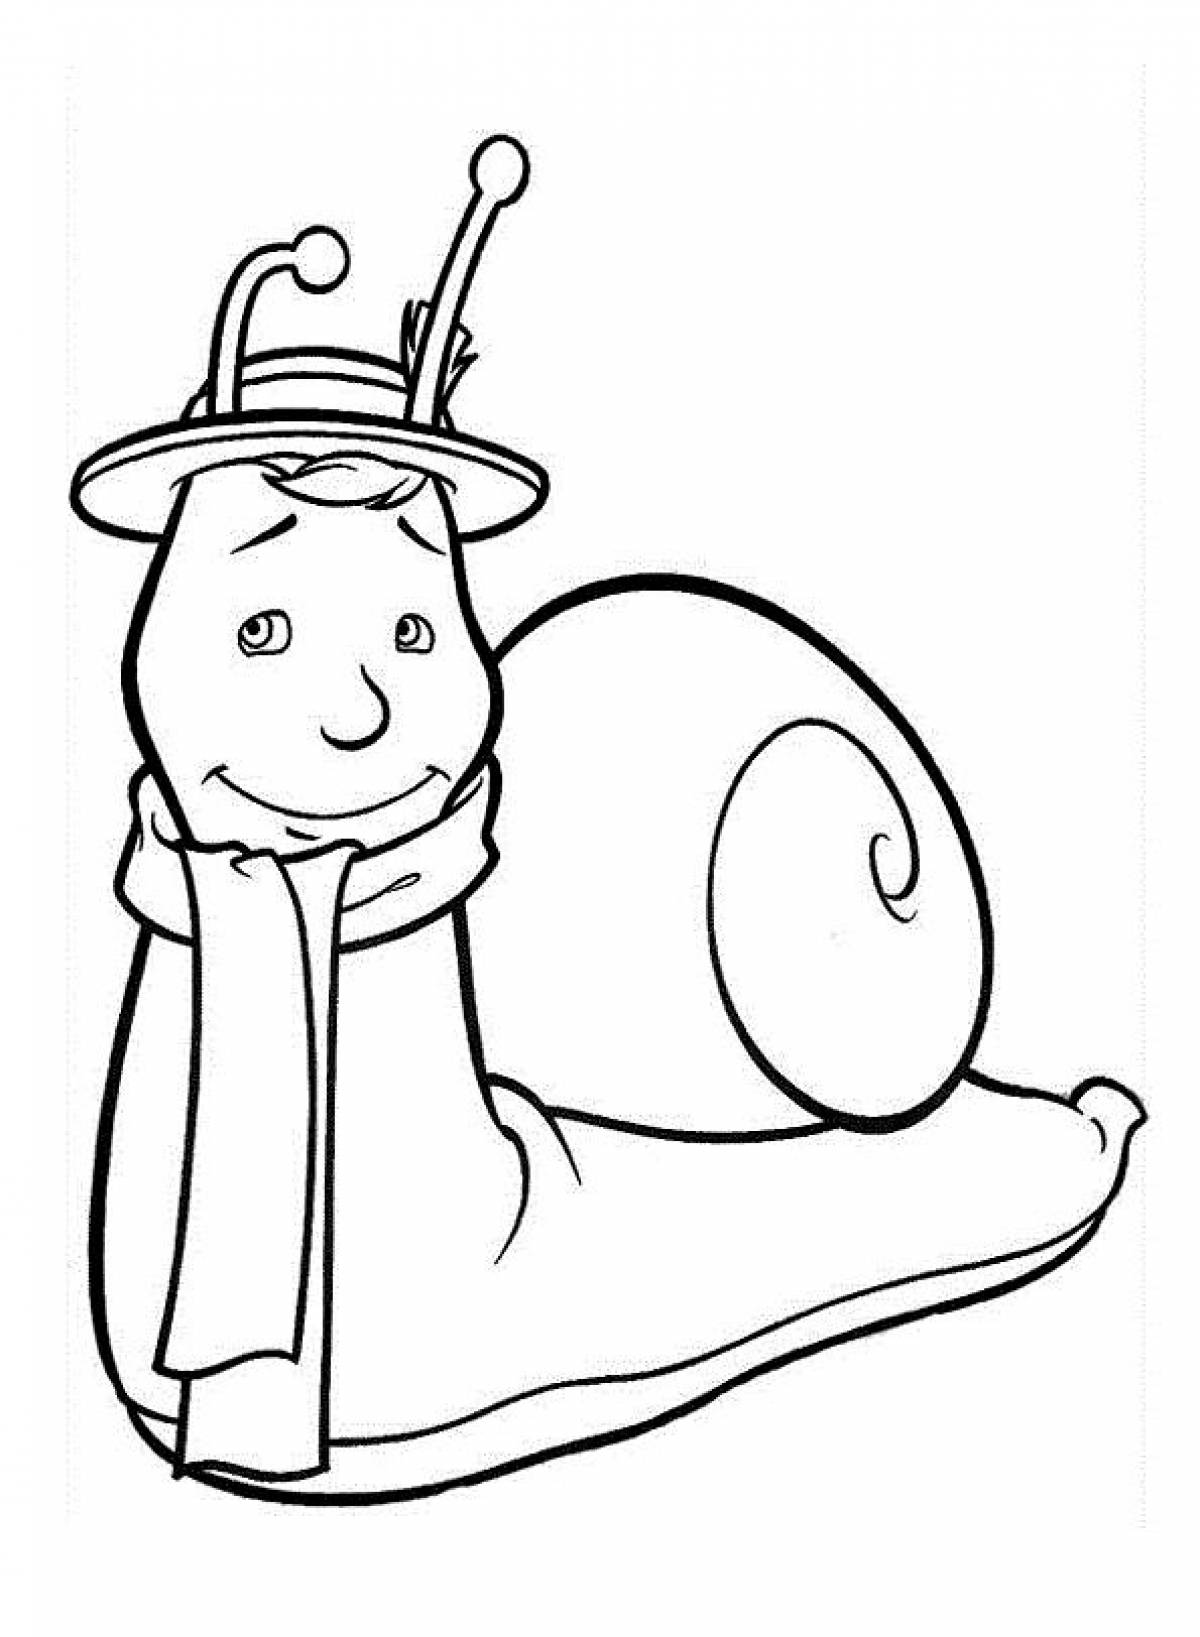 Snail in a hat